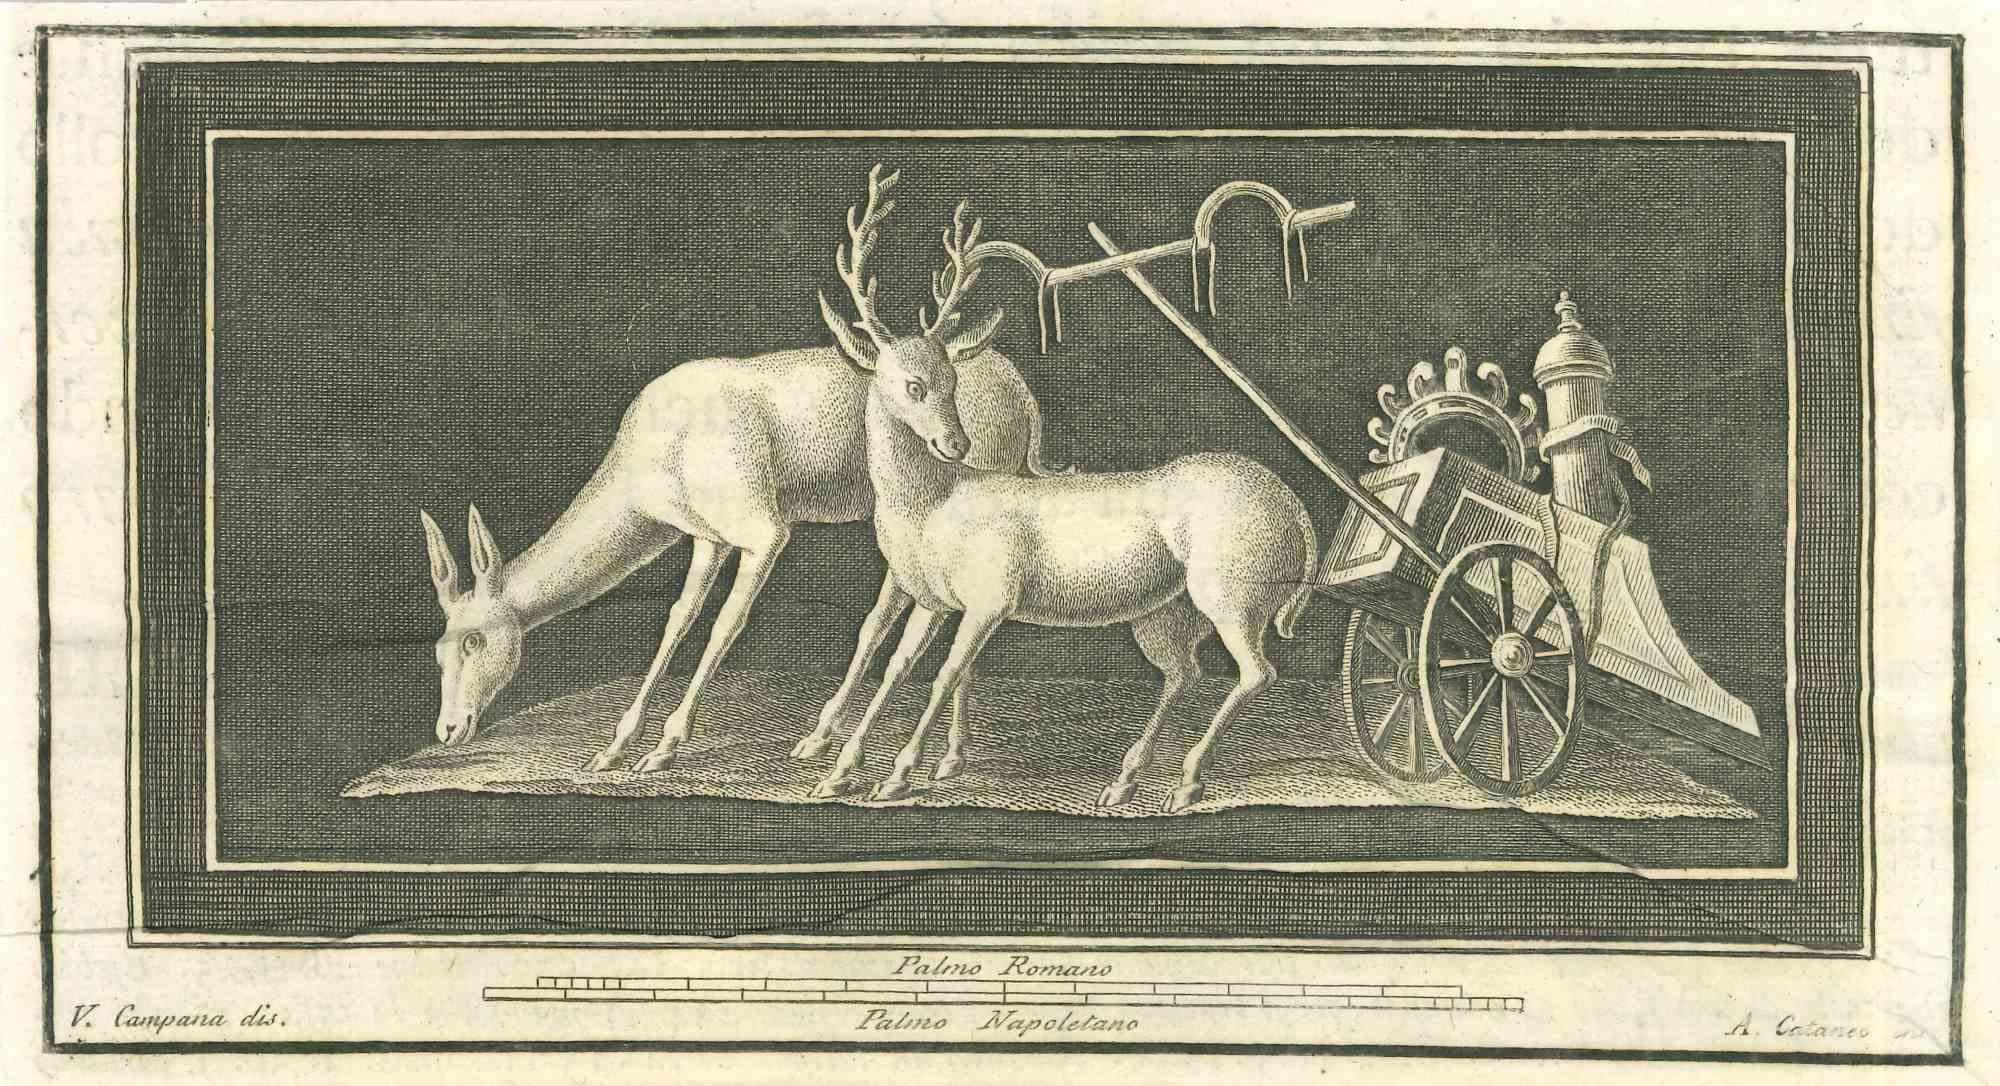 Tiere Pompejanisches Fresko aus den "Altertümern von Herculaneum" ist eine Radierung auf Papier von Aniello Cataneo aus dem 18. Jahrhundert.

Signiert auf der Platte.

Gute Bedingungen.

Die Radierung gehört zu der Druckserie "Antiquities of